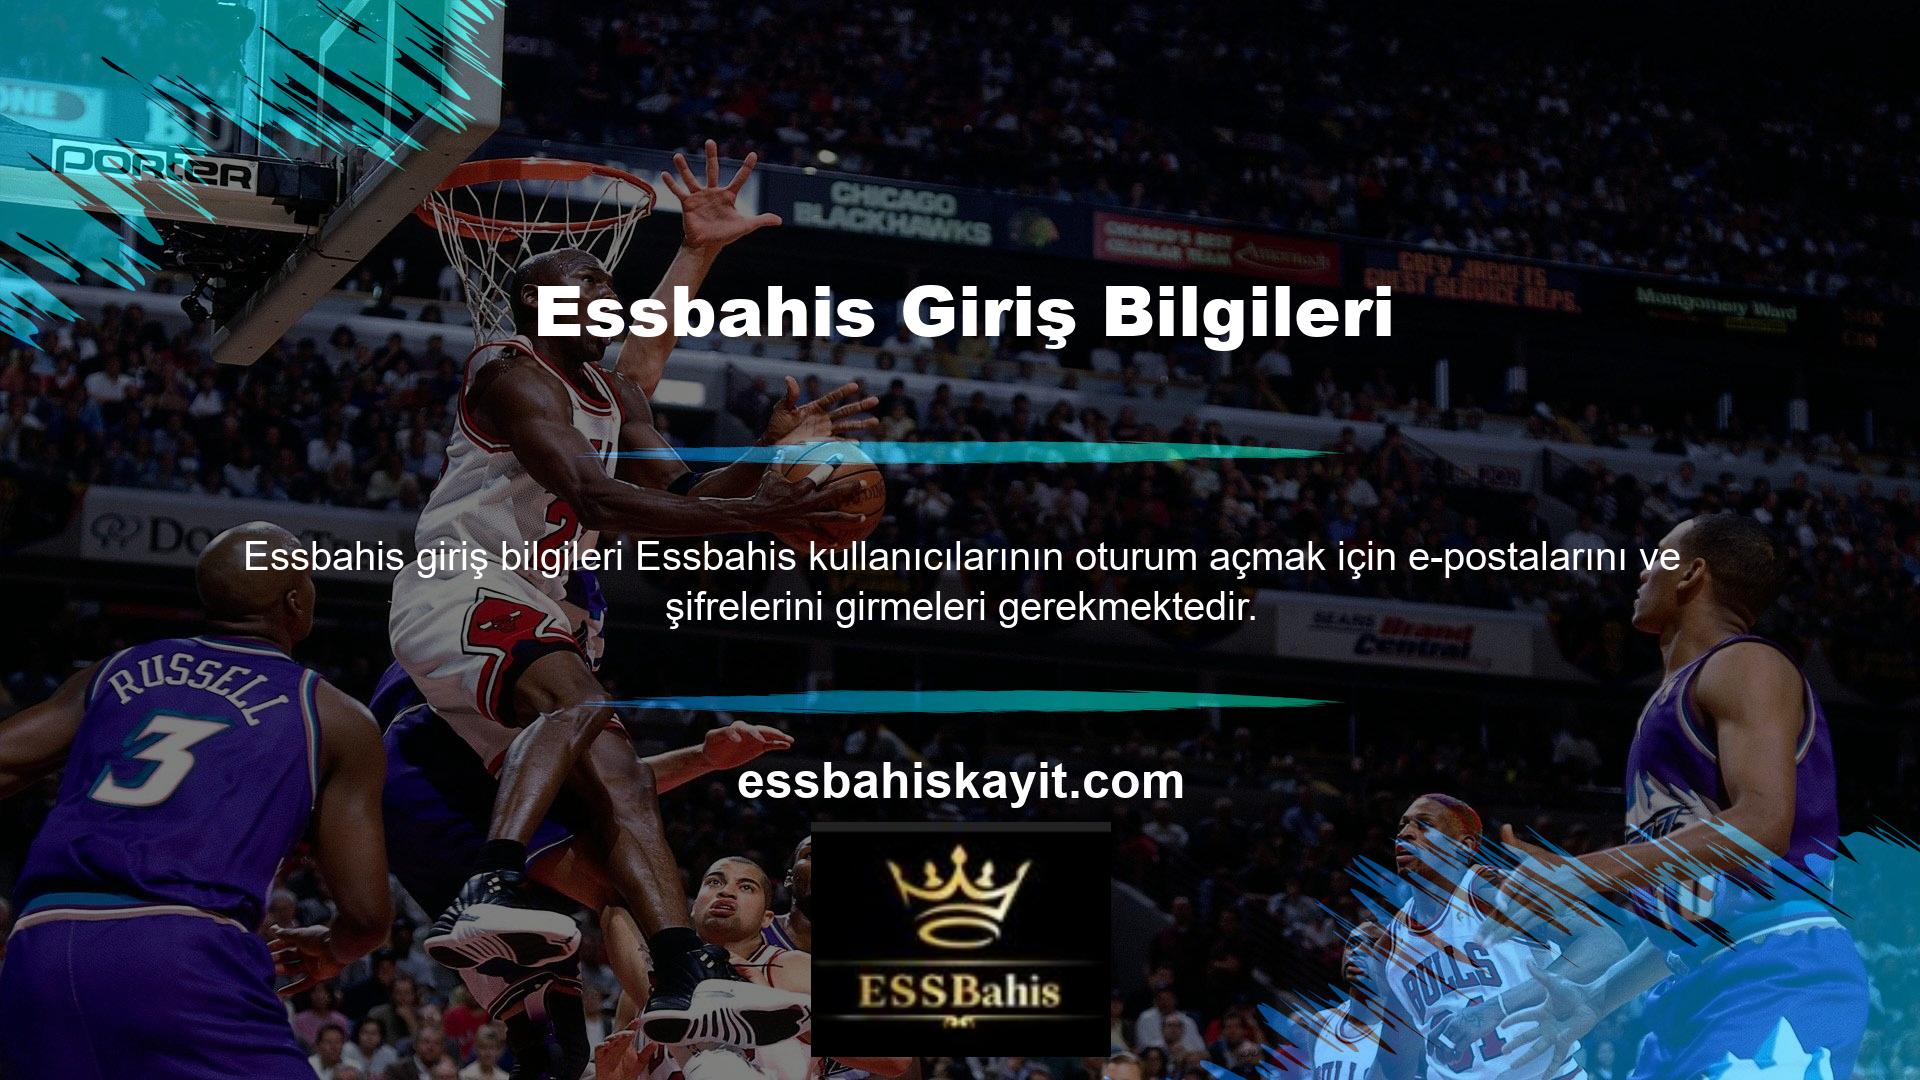 Essbahis Twitter hesabı da bu güncellenmiş oturum açma adreslerine erişim sağlar